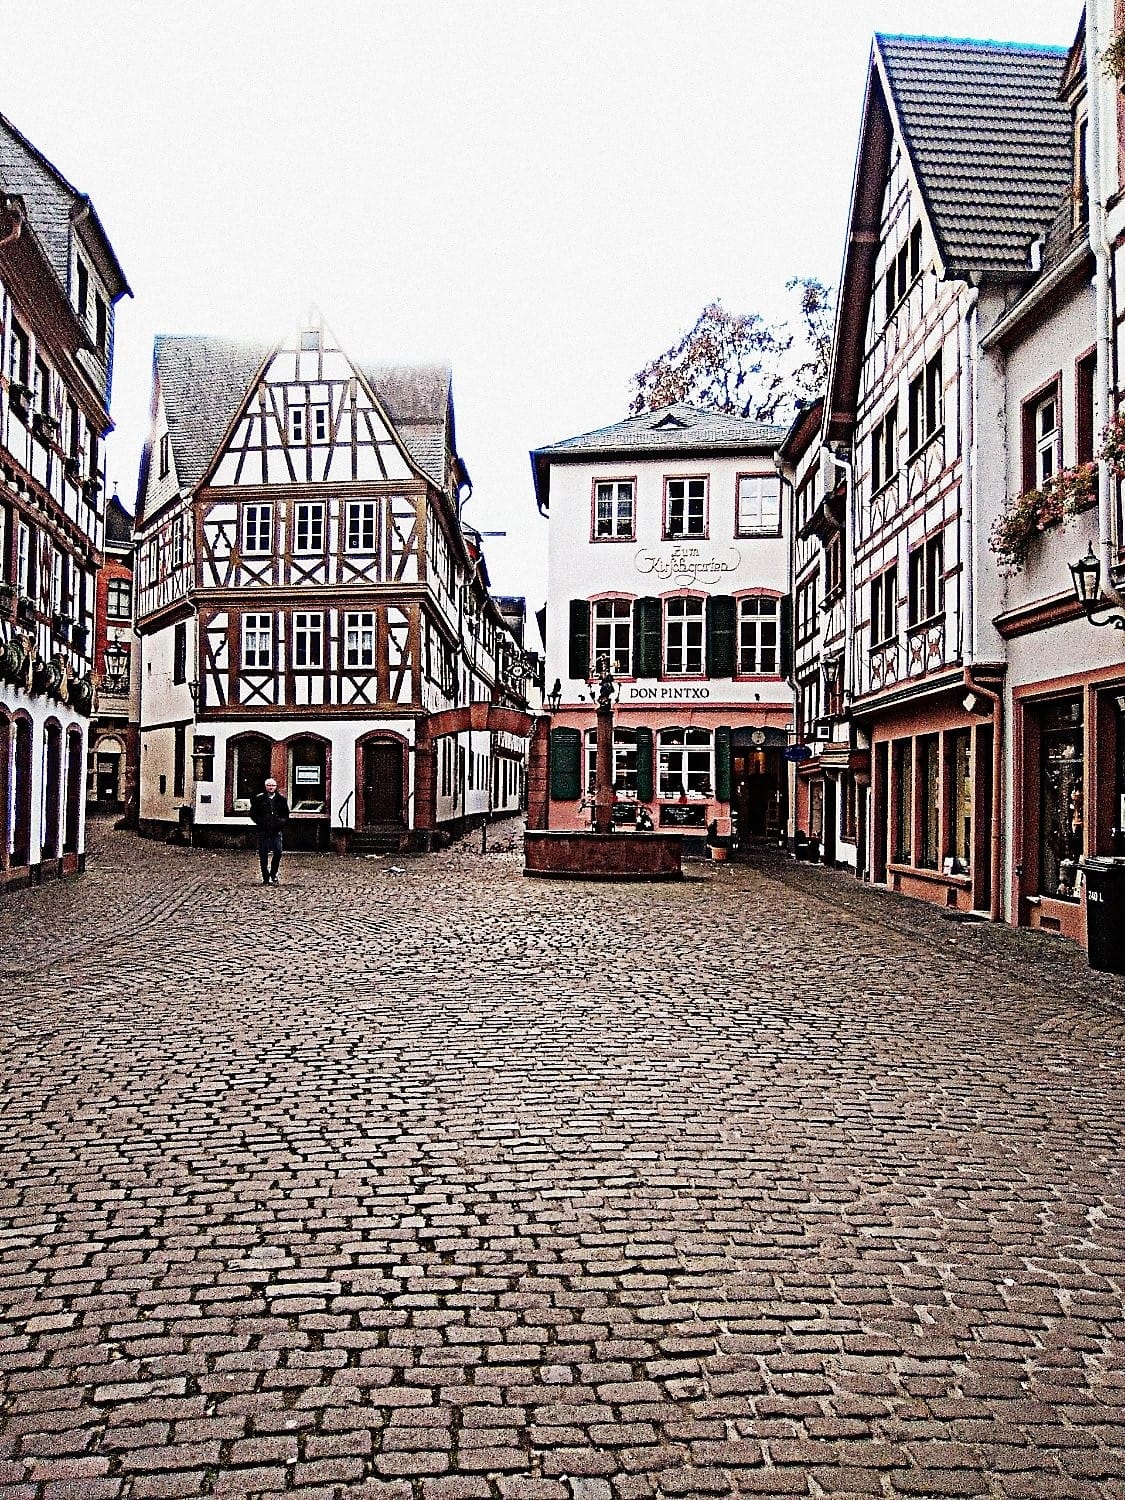 Mainz ist nicht nur wegen des Faschings ein Besuch wert, sondern auch wegen seiner gut erhaltenen Fachwerkhäuser.